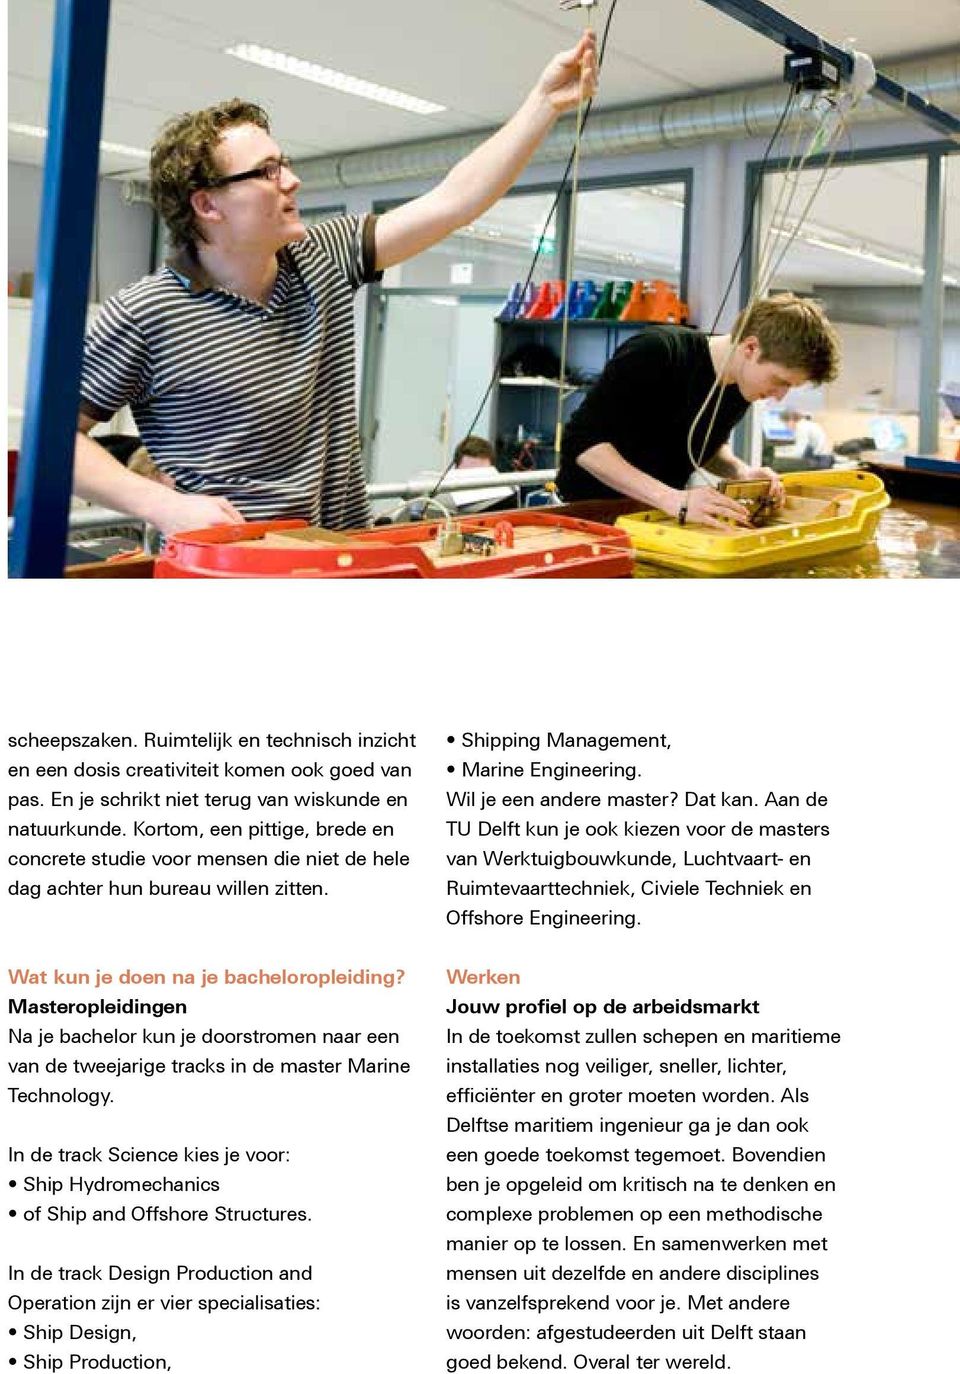 Aan de TU Delft kun je ook kiezen voor de masters van Werktuigbouwkunde, Luchtvaart- en Ruimtevaarttechniek, Civiele Techniek en Offshore Engineering. Wat kun je doen na je bacheloropleiding?